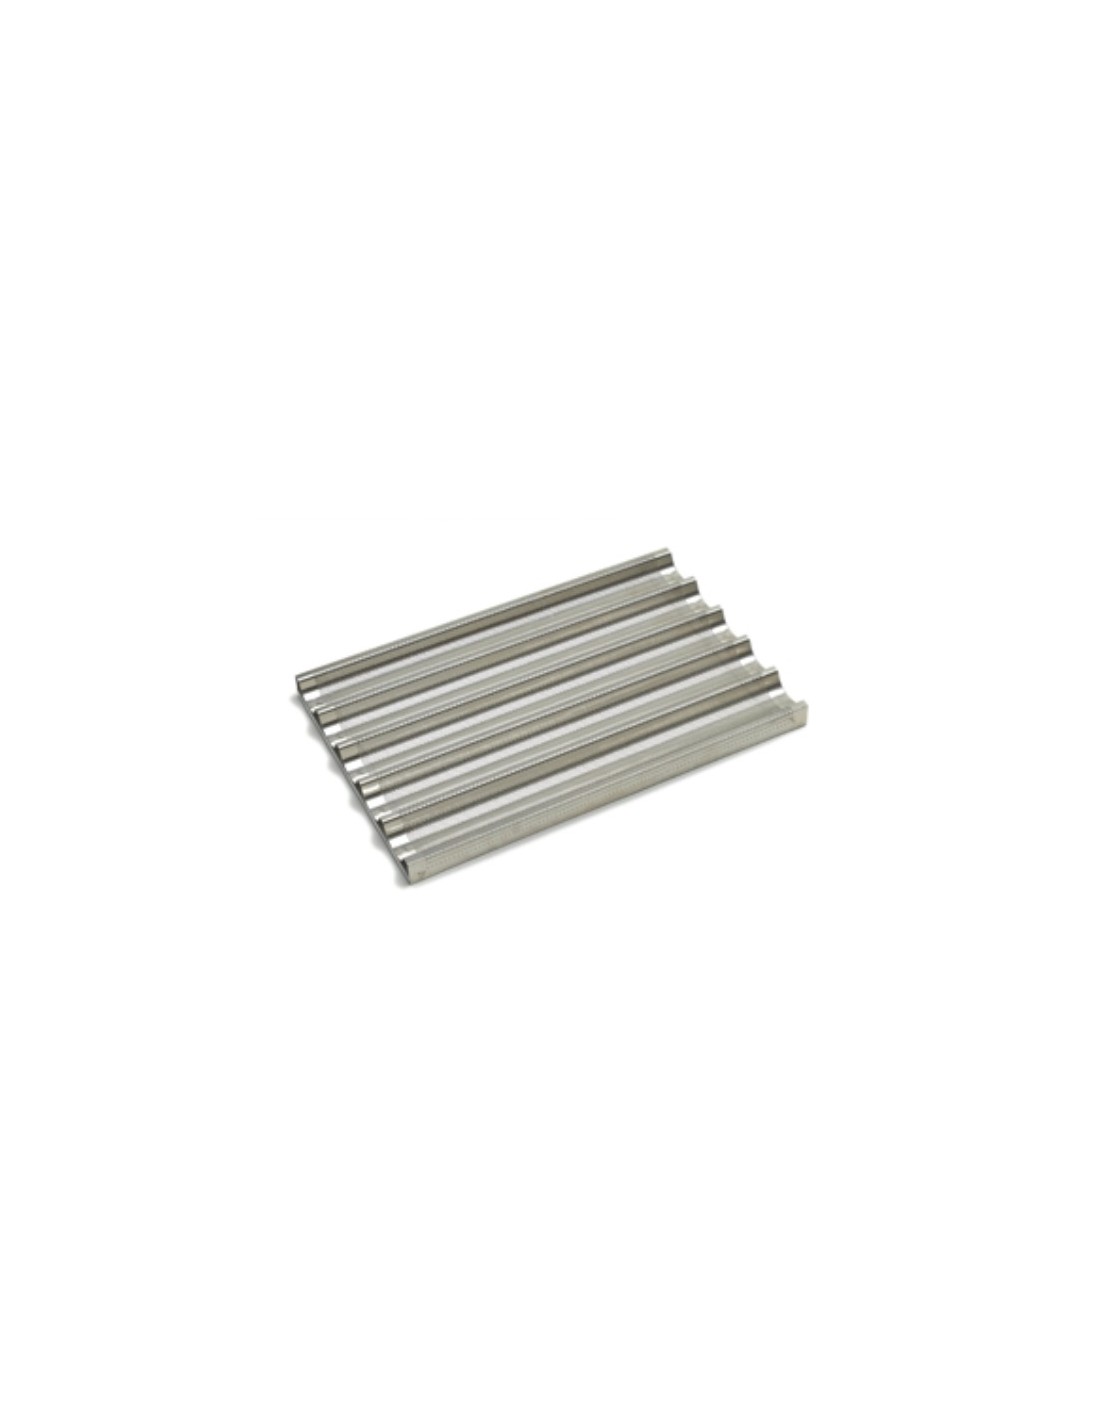 Teglia alluminio forata ondulata - Cm 60 x 40